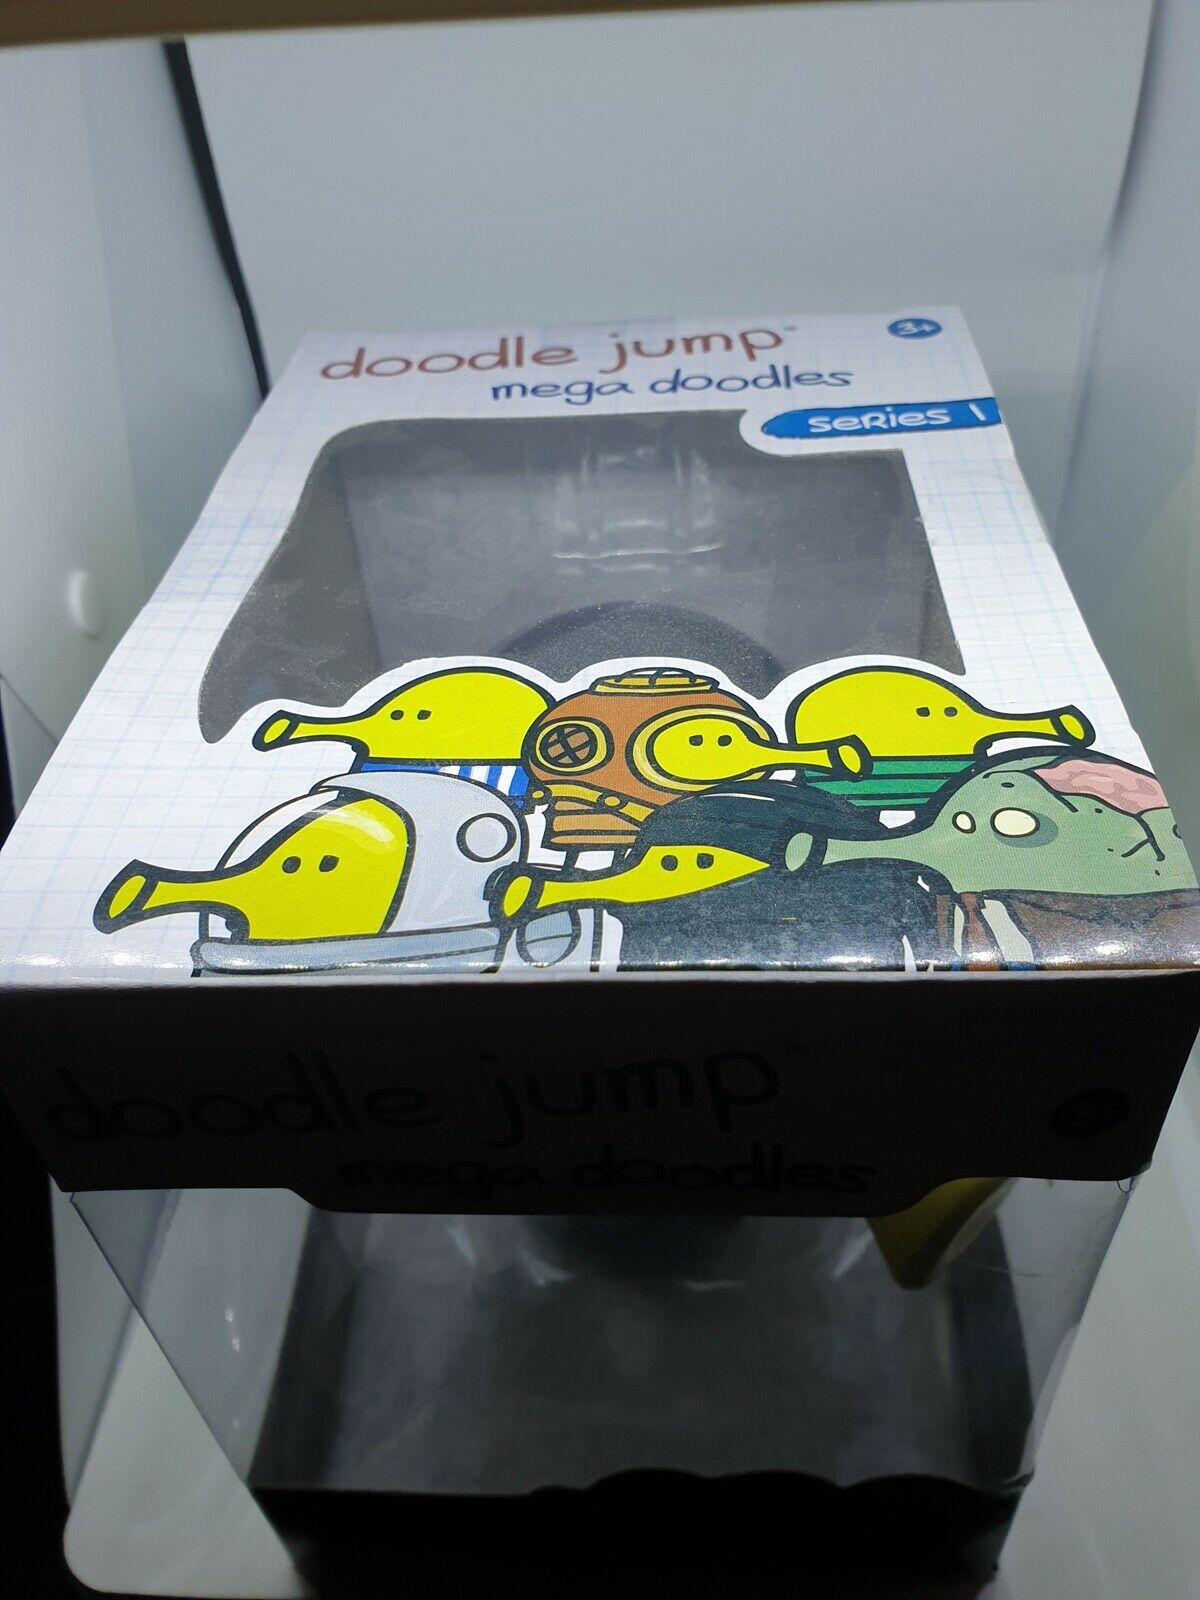 Doodle Jump mega doodles Serie 1 Sammelfigur in Box - Ninja, Spielwaren  divers, Spielwaren